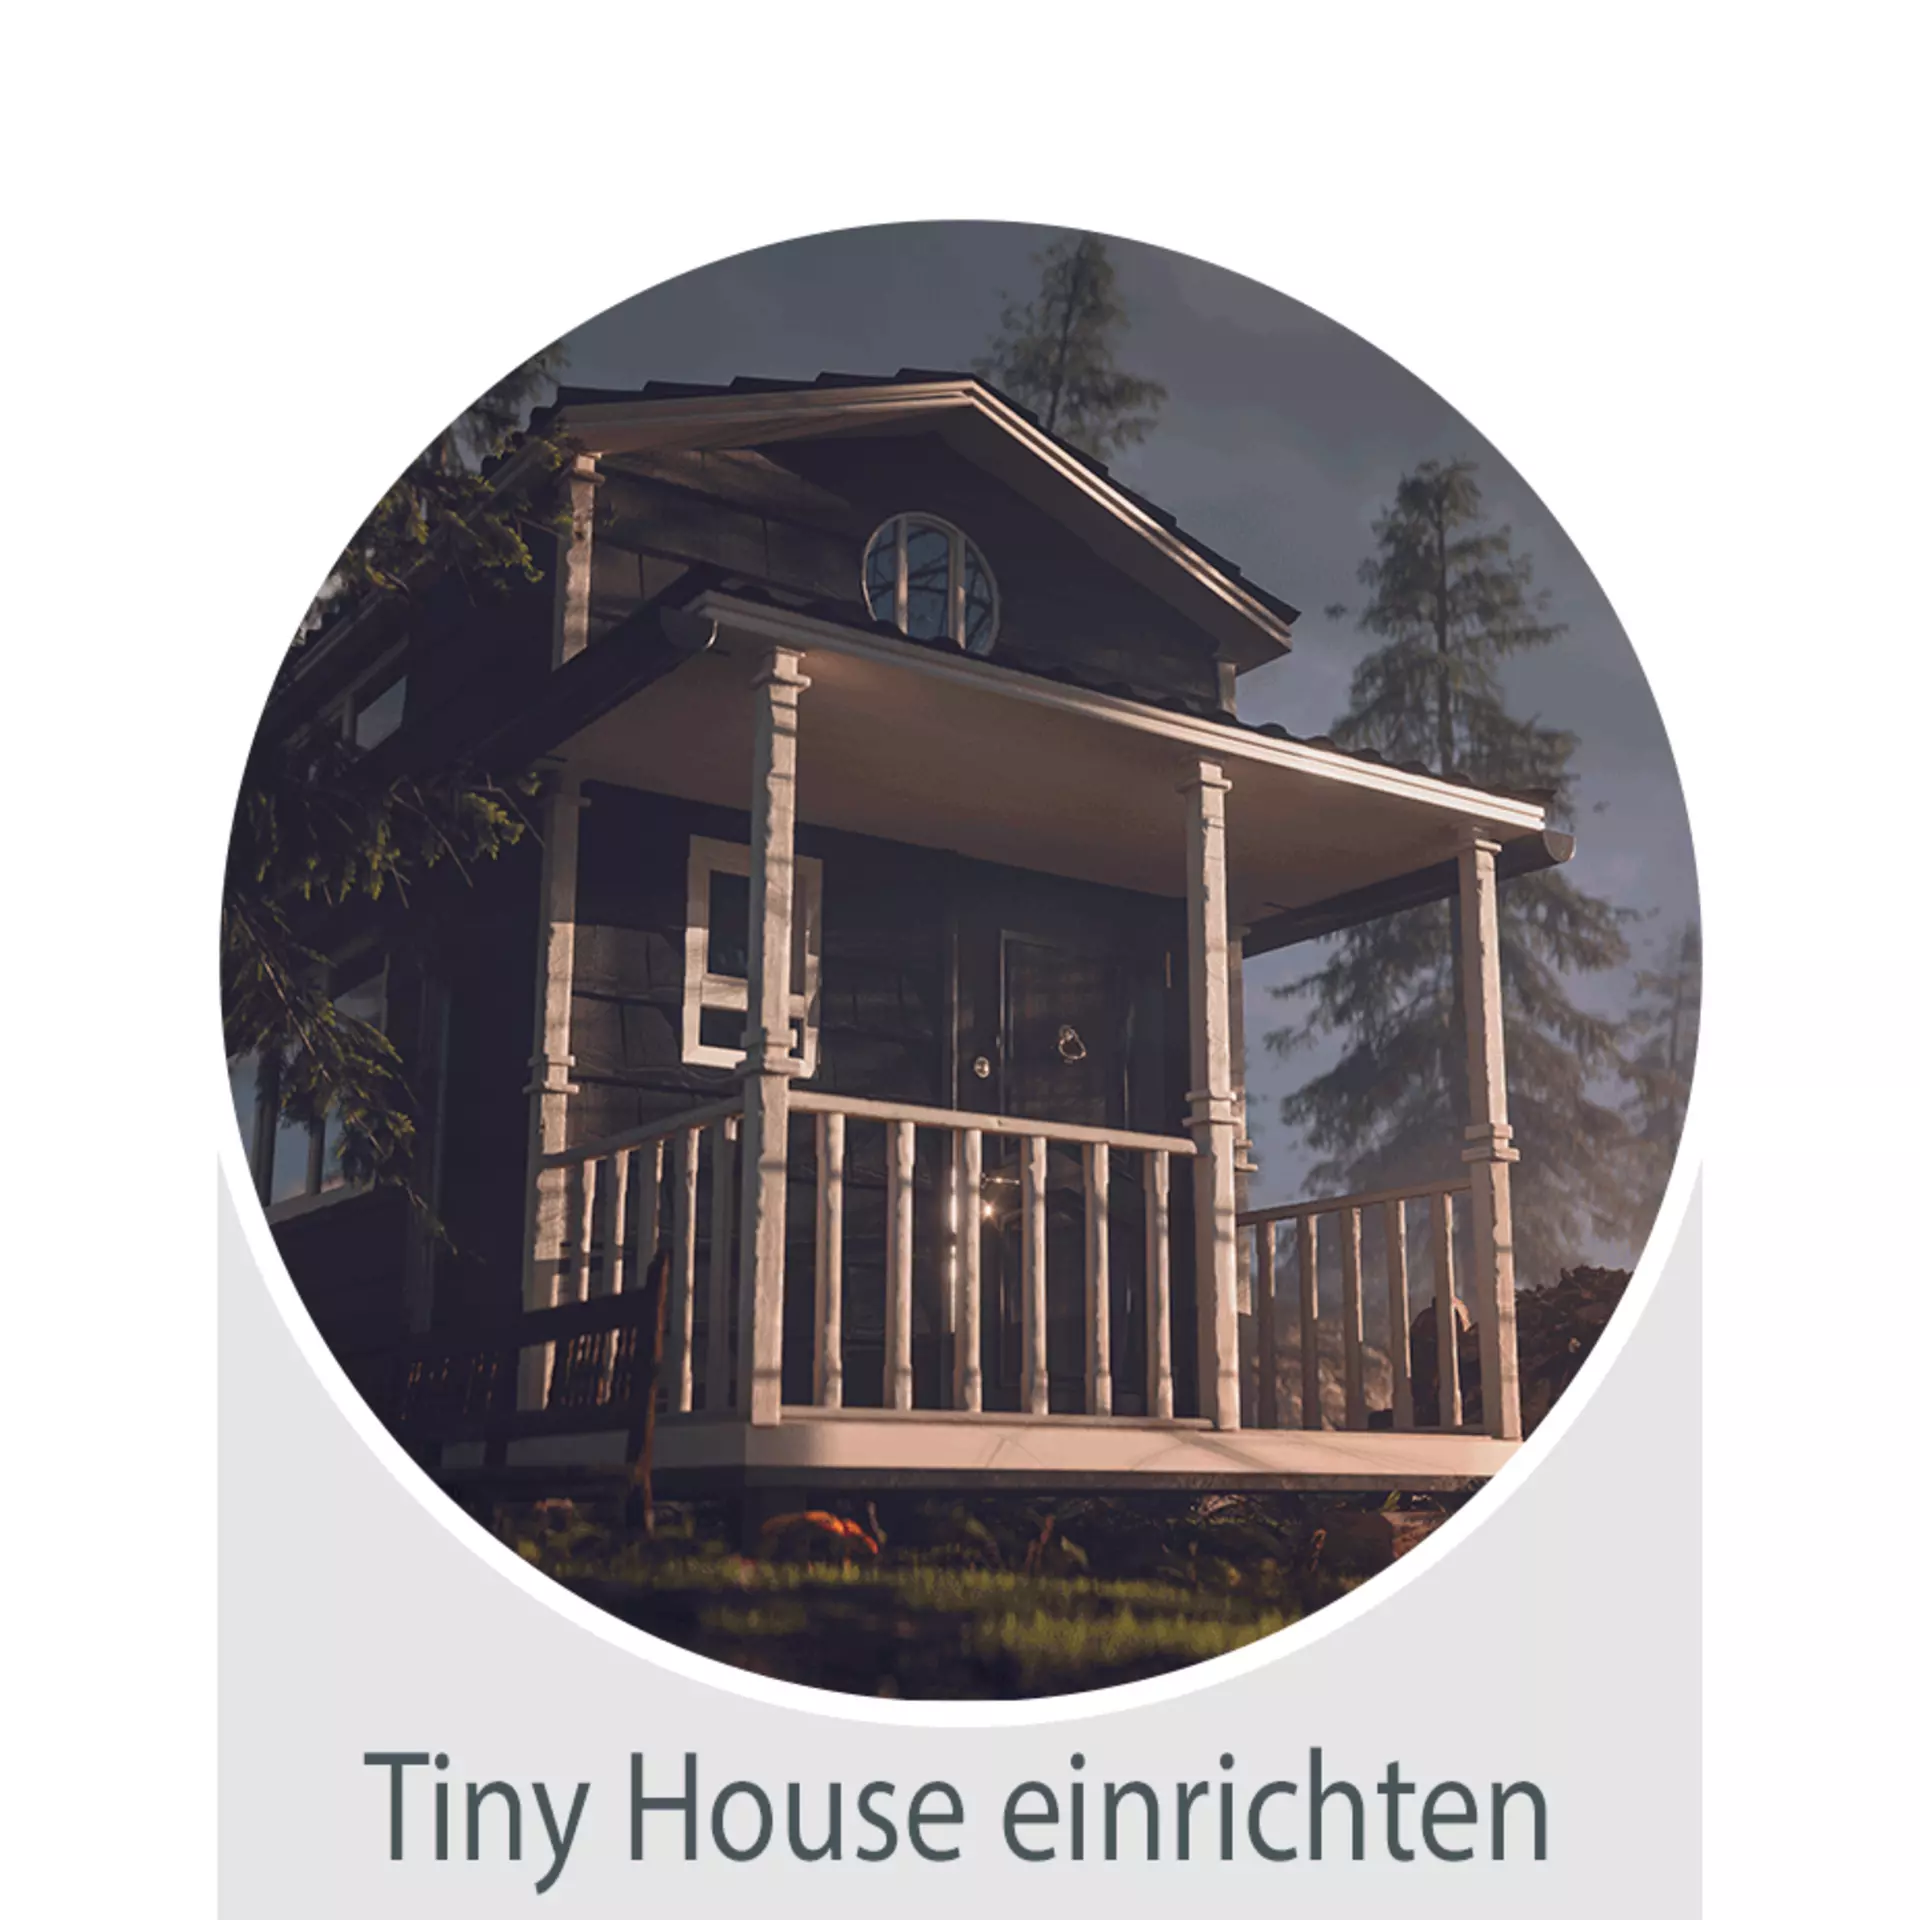 Inhofer erklärt: Tiny House einrichten